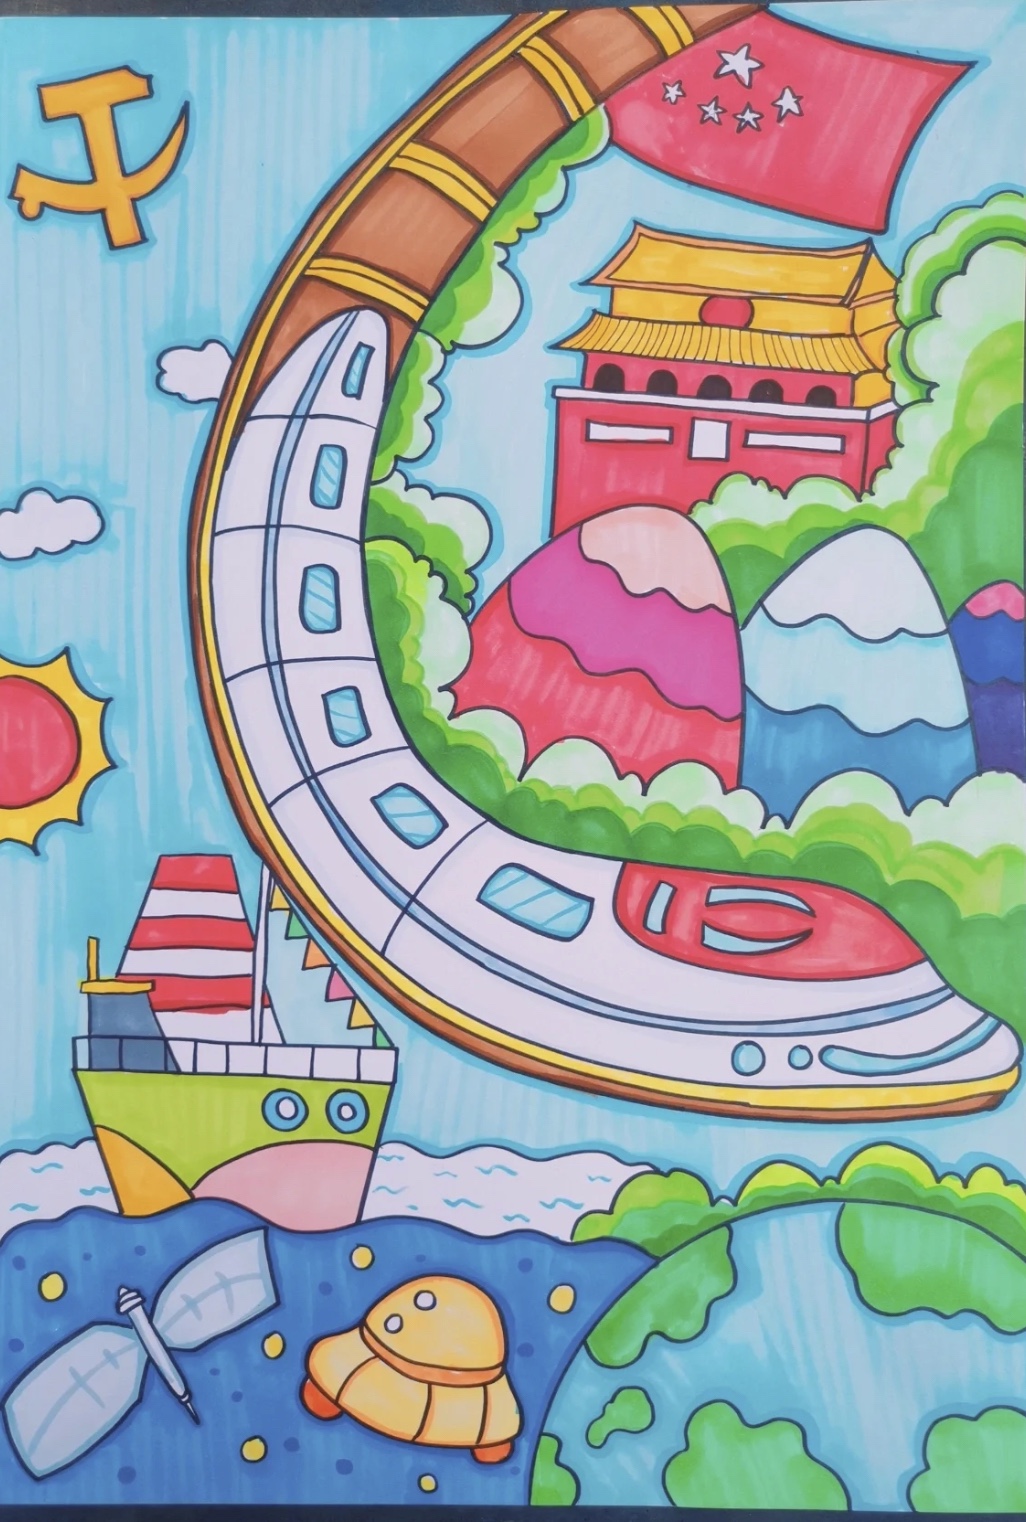 小小浓浓中国情一幅画儿童画模板素材电子版简笔画主题绘画线稿